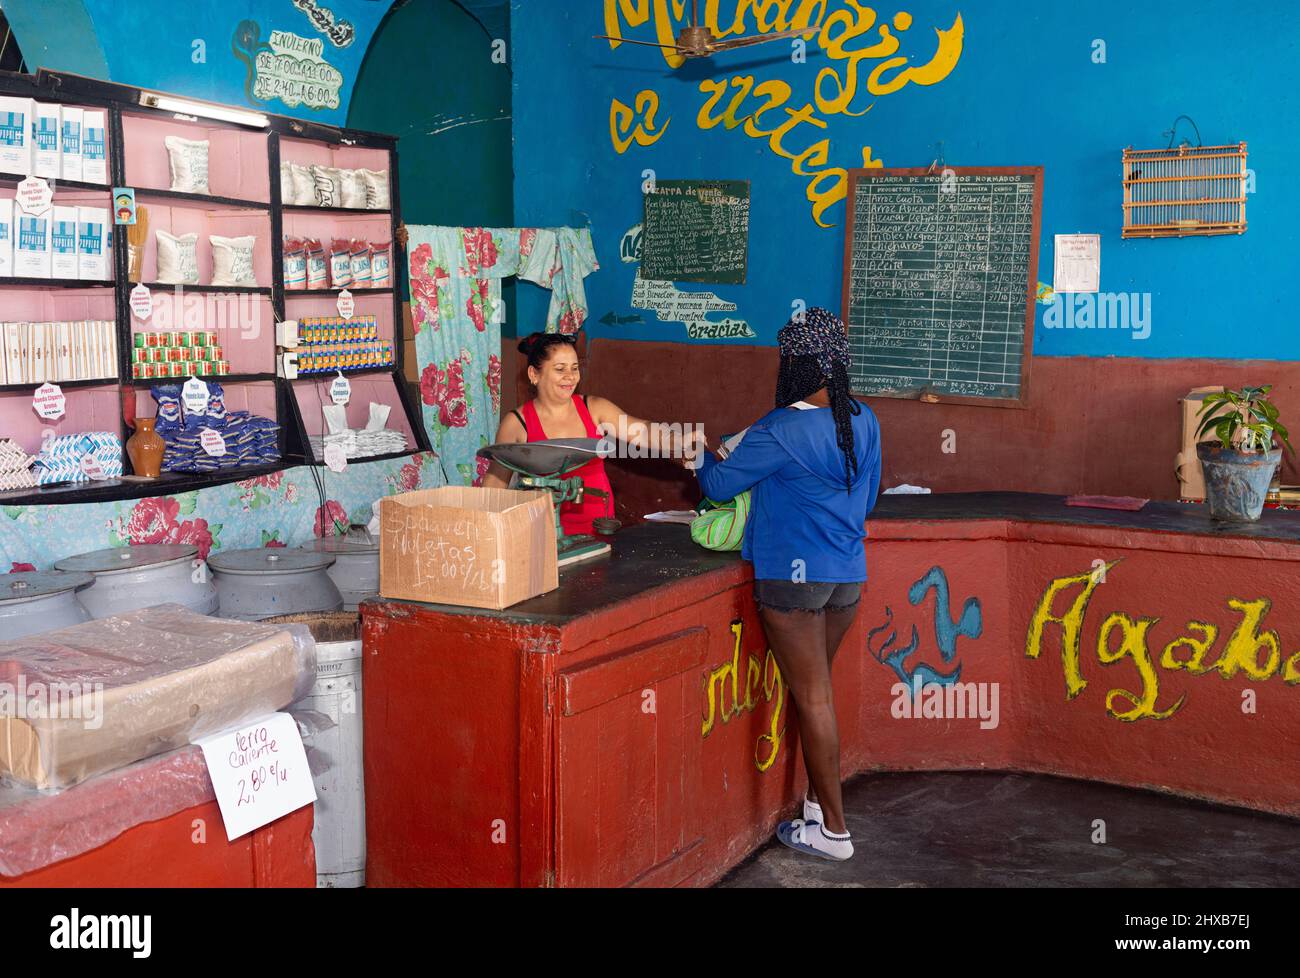 Typisches Geschäft in Trinidad, Kuba. Kleiner Laden mit begrenzten Produkten aufgrund von Einschränkungen durch die Regierung Stockfoto